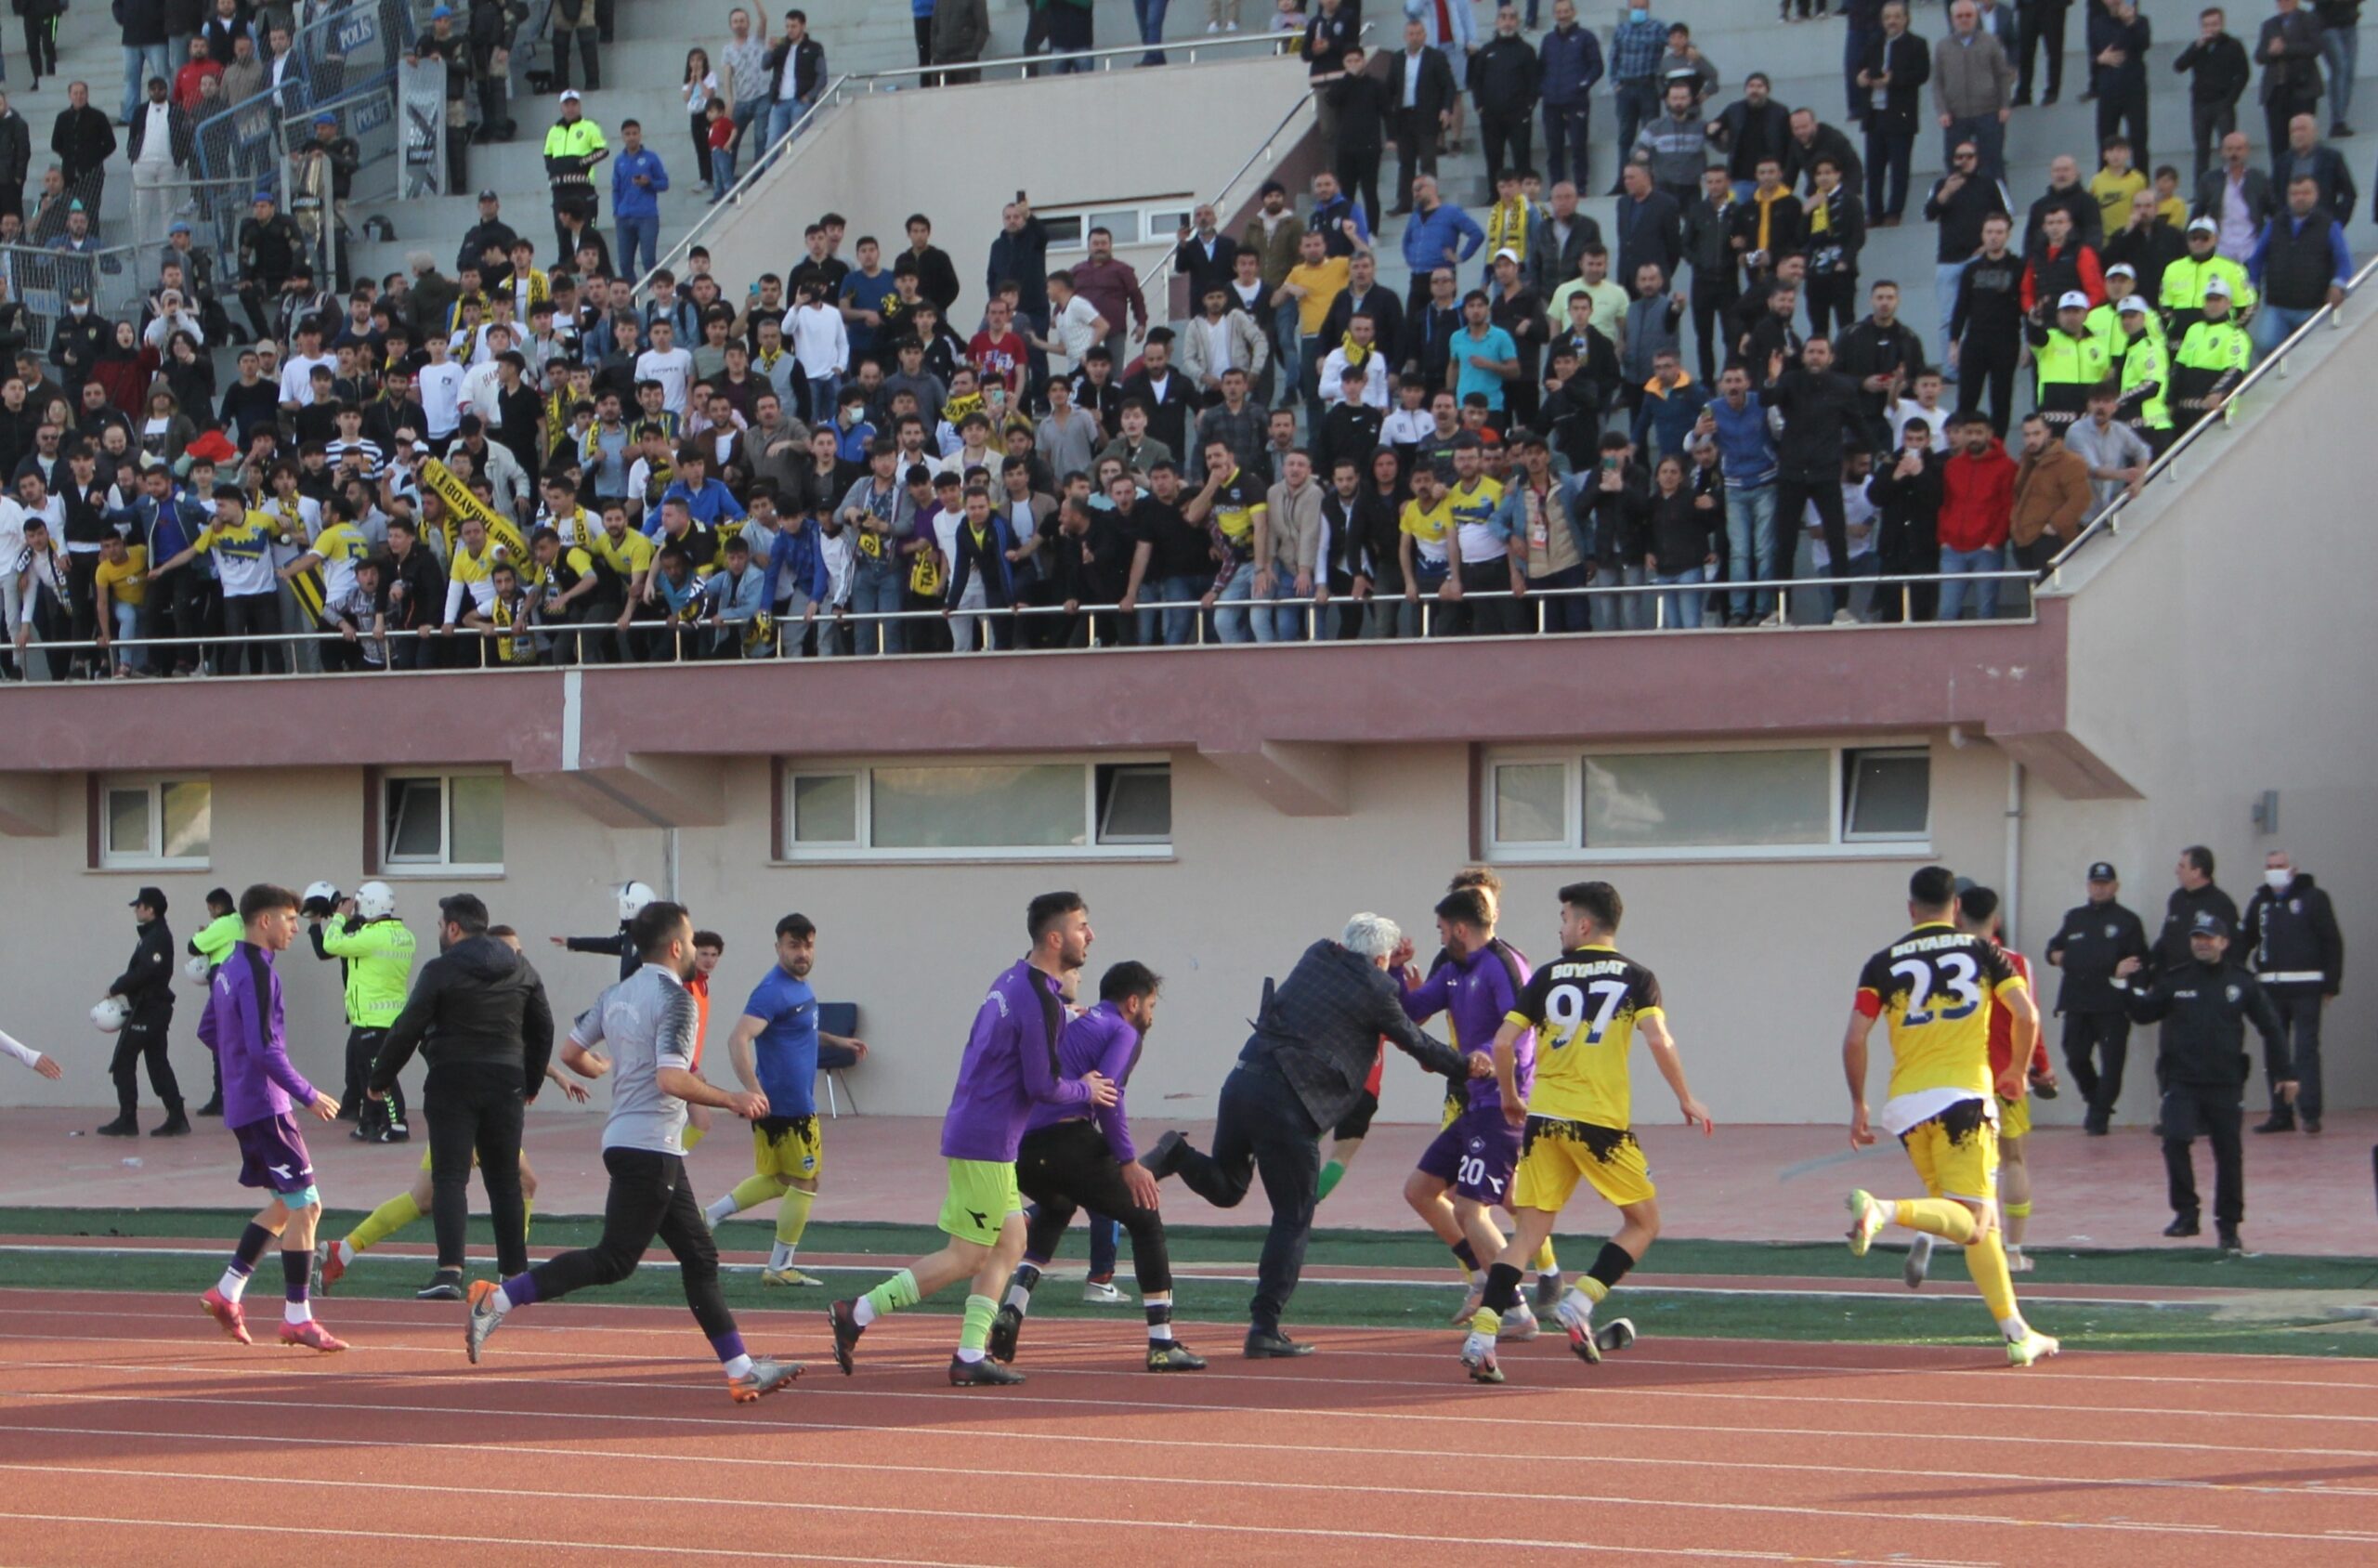 Sinop’ta amatör küme maçında futbolcular arasında kavga çıktı